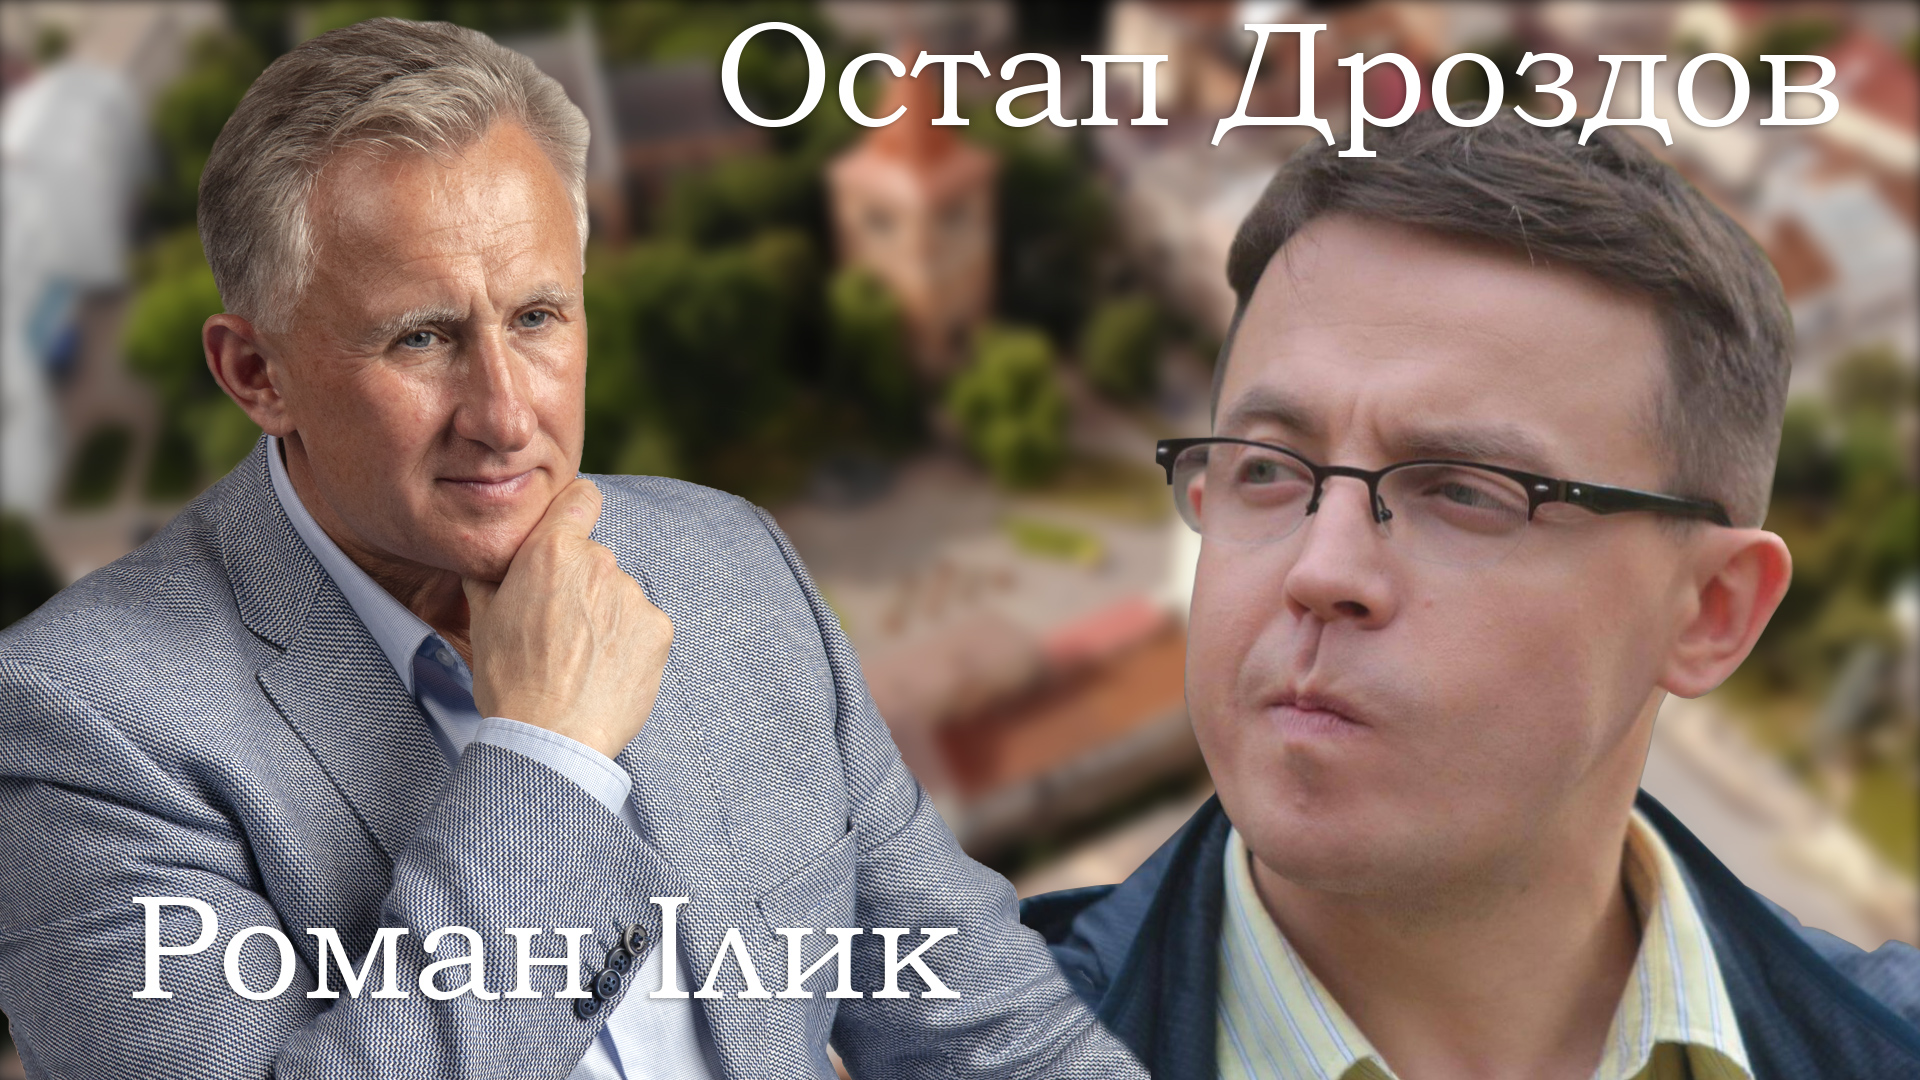 Роман Ілик: «Парламенту потрібні досвідчені проукраїнські політики, бо є загроза реваншу»